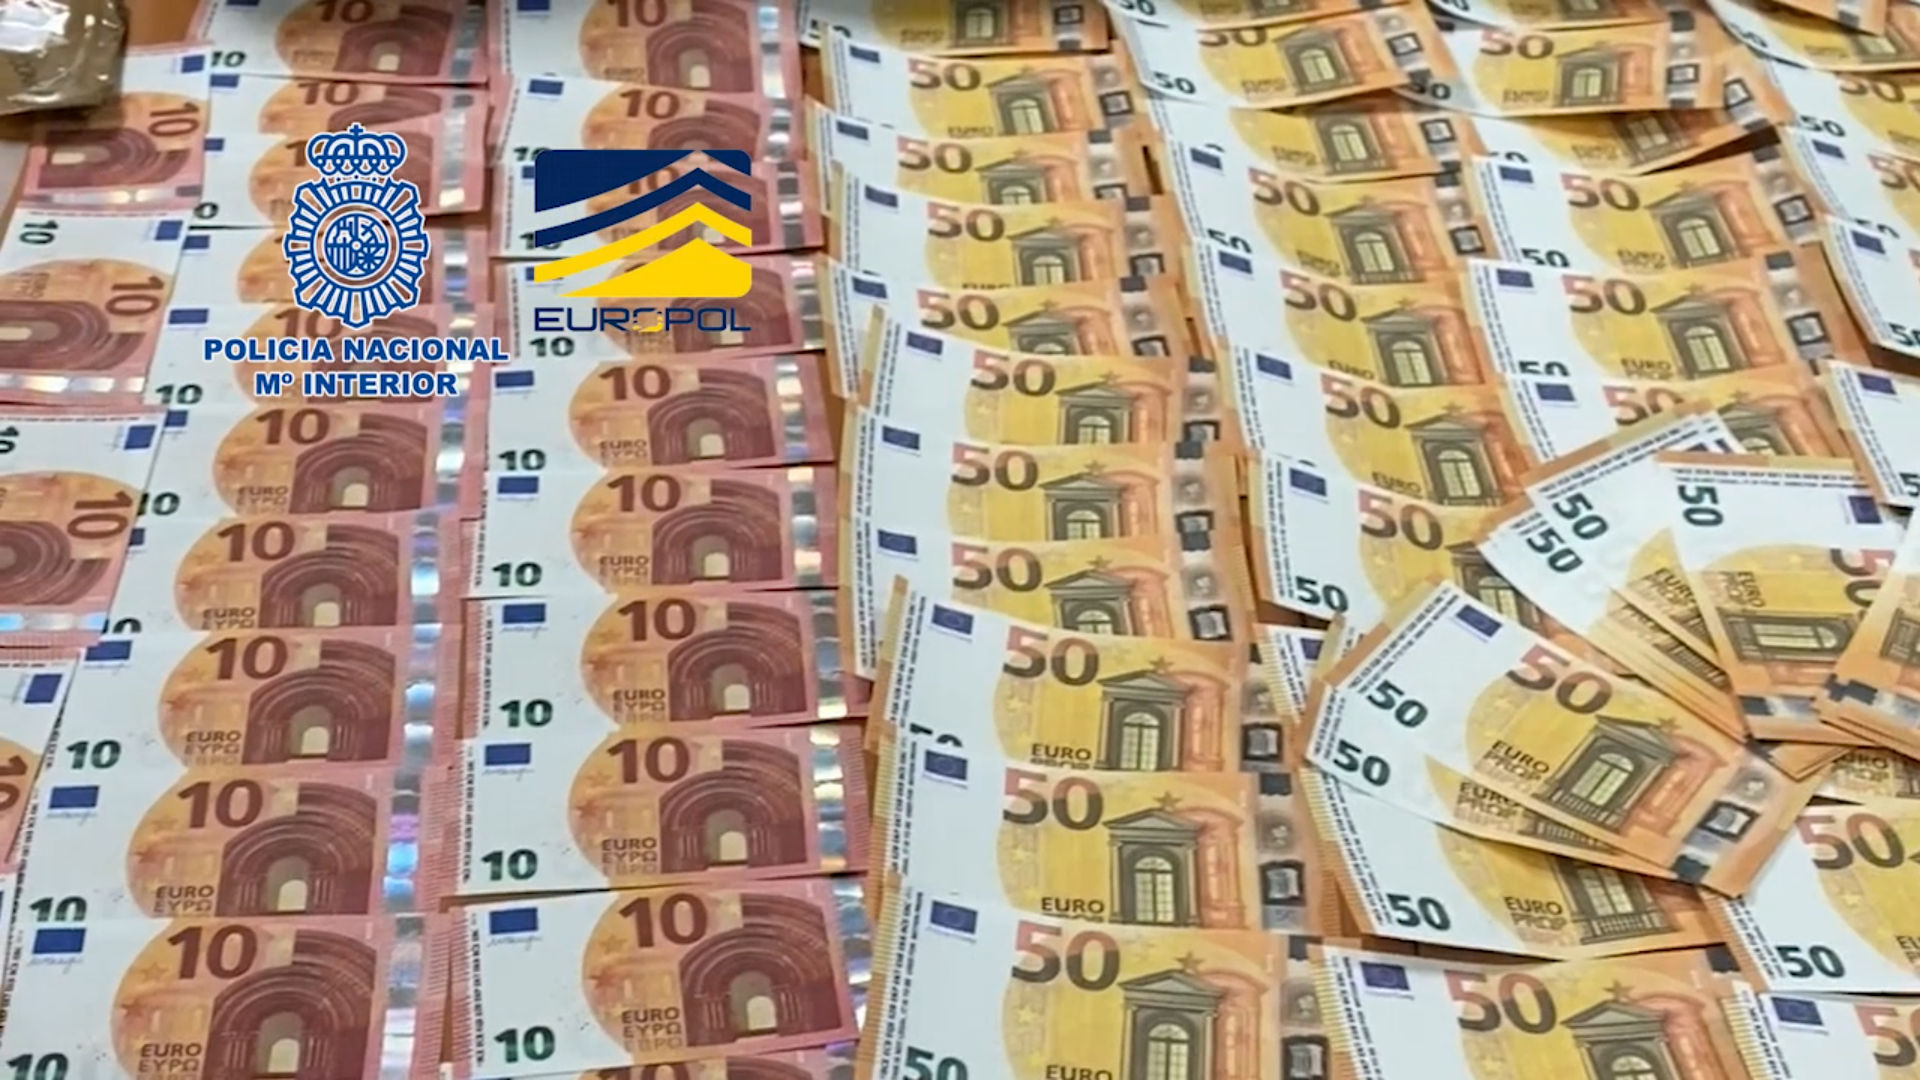 La Policía Nacional desmantela una imprenta clandestina de billetes falsos en Huelva